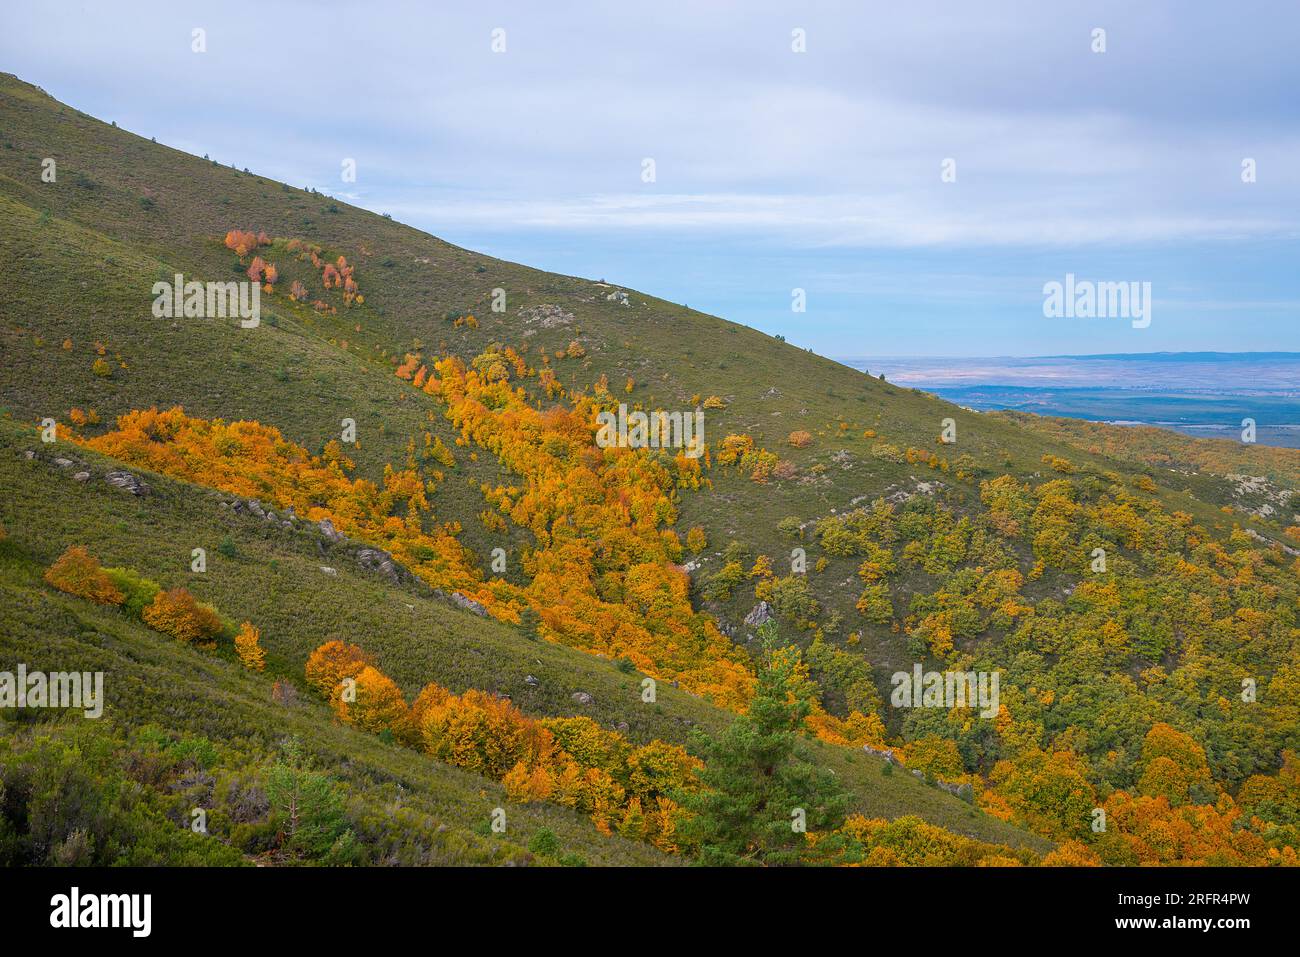 Autumn landscape. Riofrio de Riaza, Segovia province, Castilla Leon, Spain. Stock Photo